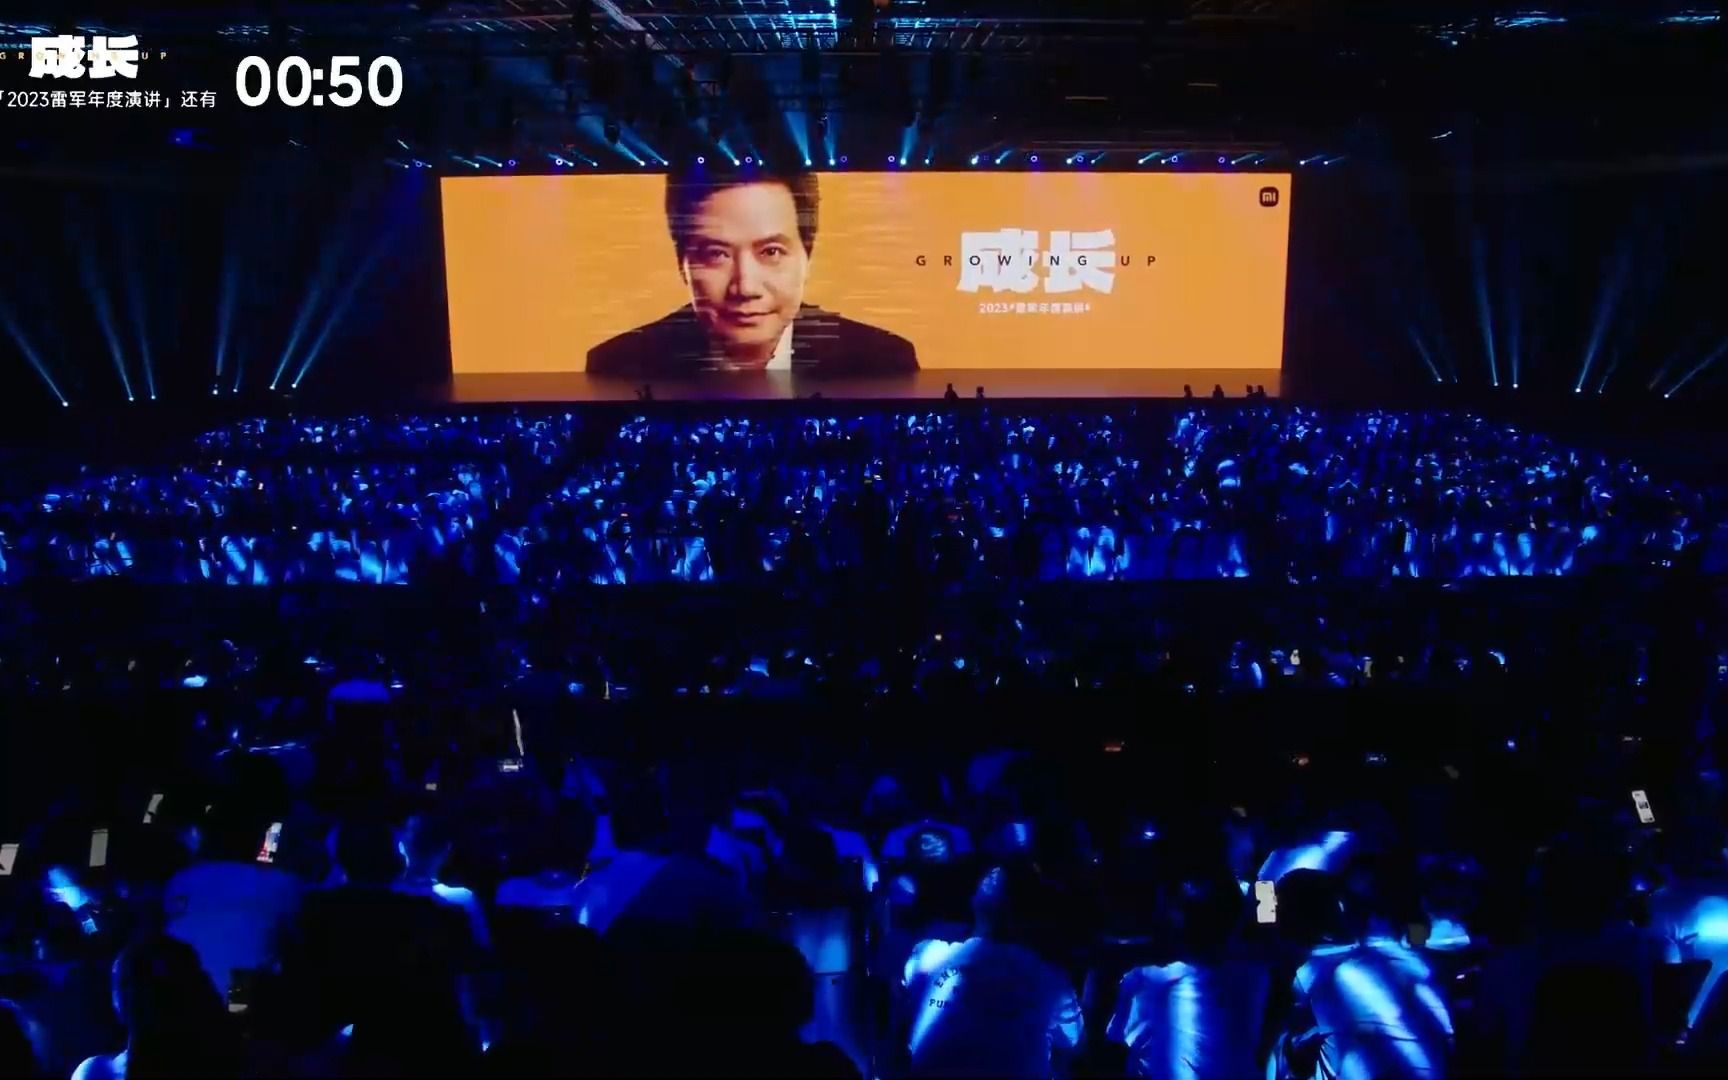 【史上最全】小米公司发布会合集 Xiaomi CIVI 2 雷军年度演讲 MIX - 哔哩哔哩